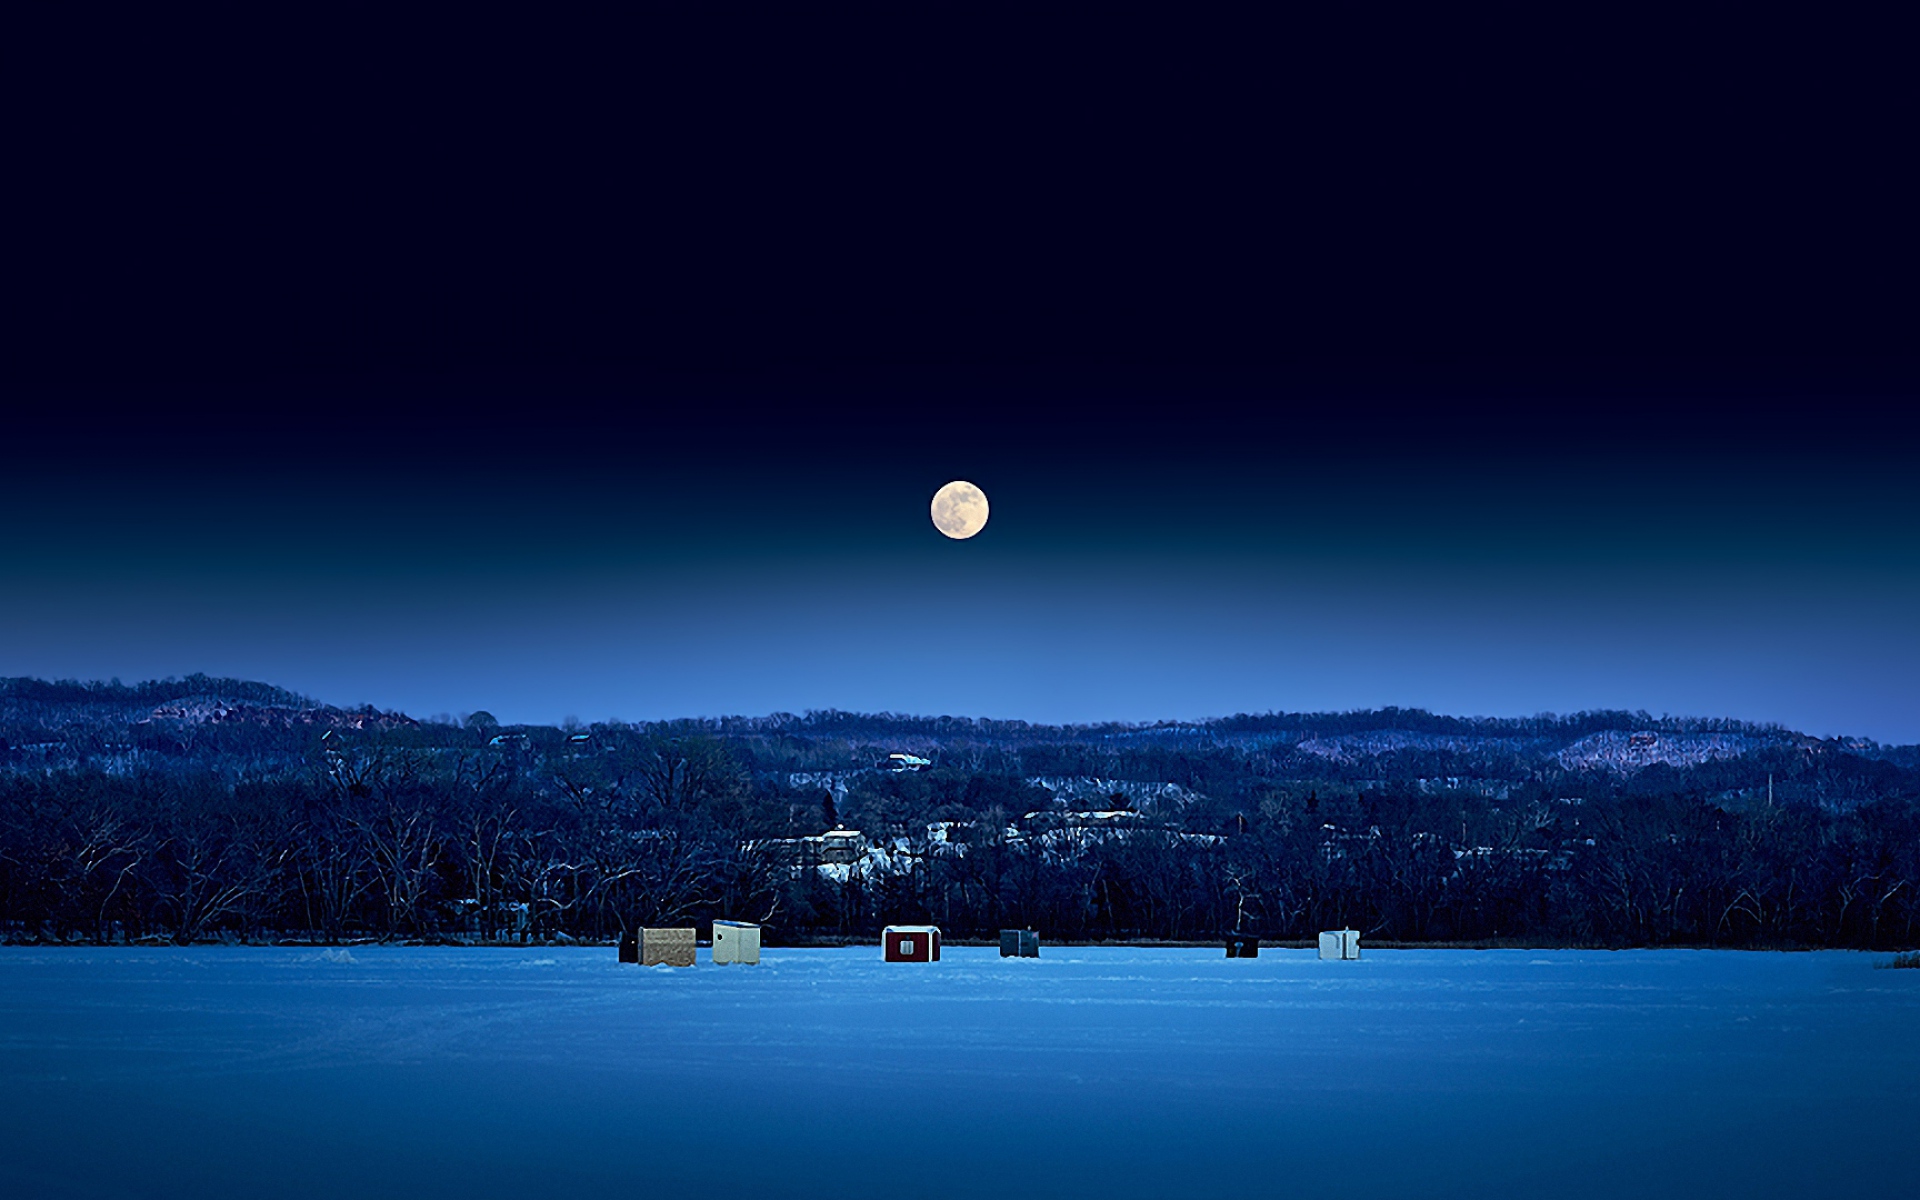 Картинки Полная луна, ночь, небо, лед, сооружения фото и обои на рабочий стол